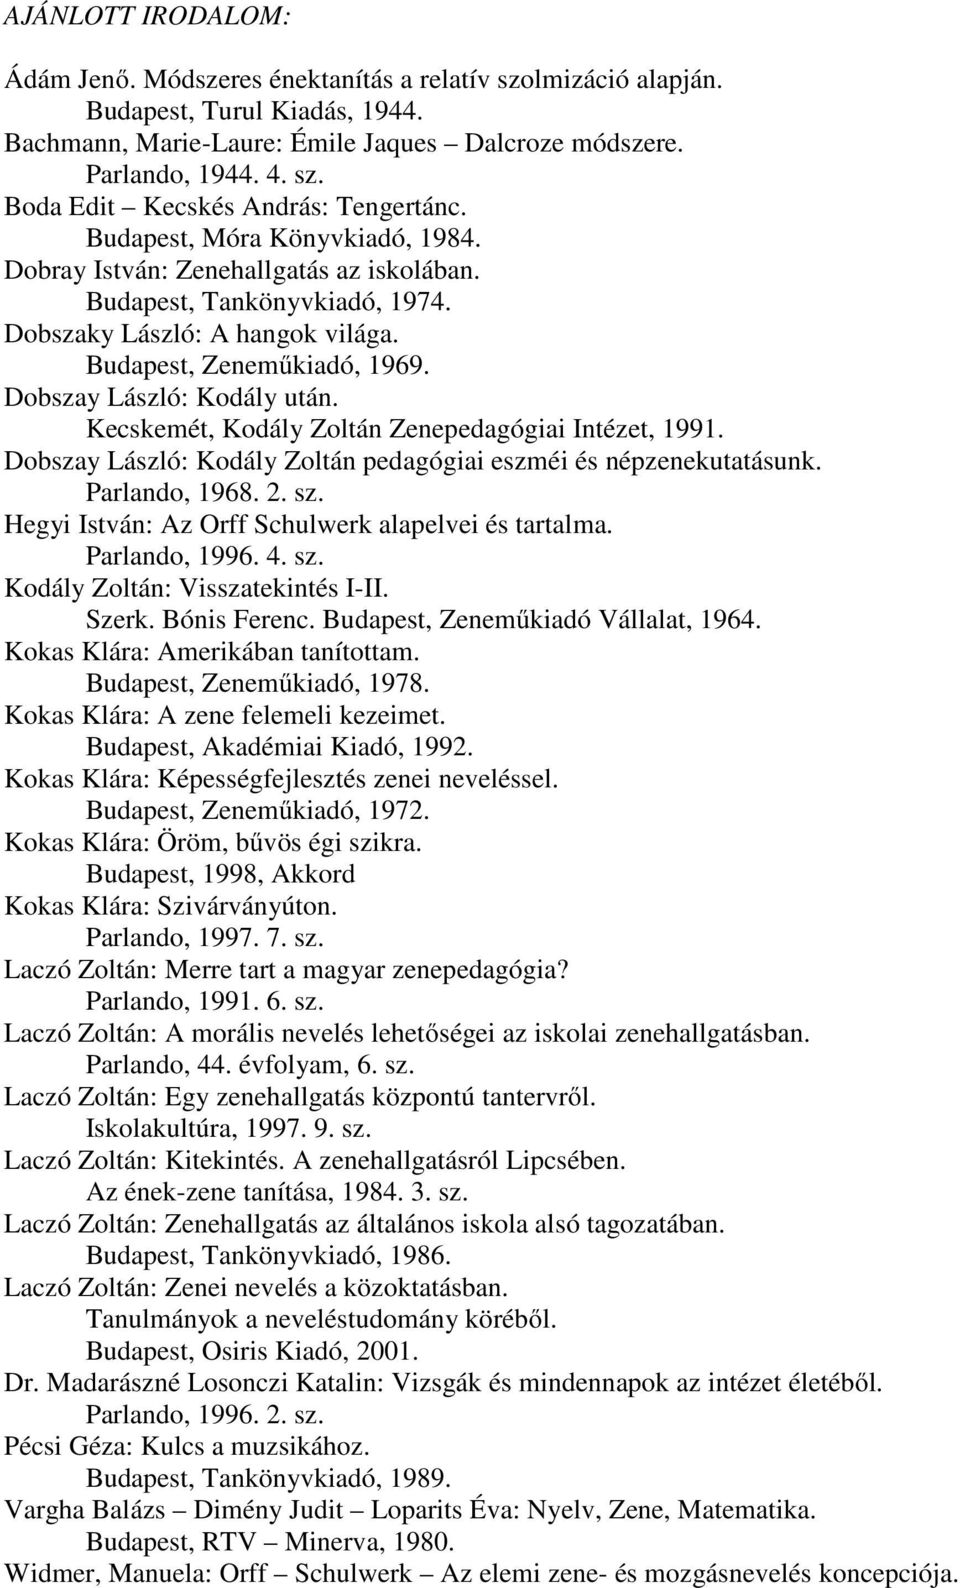 Kecskemét, Kodály Zoltán Zenepedagógiai Intézet, 1991. Dobszay László: Kodály Zoltán pedagógiai eszméi és népzenekutatásunk. Parlando, 1968. 2. sz.